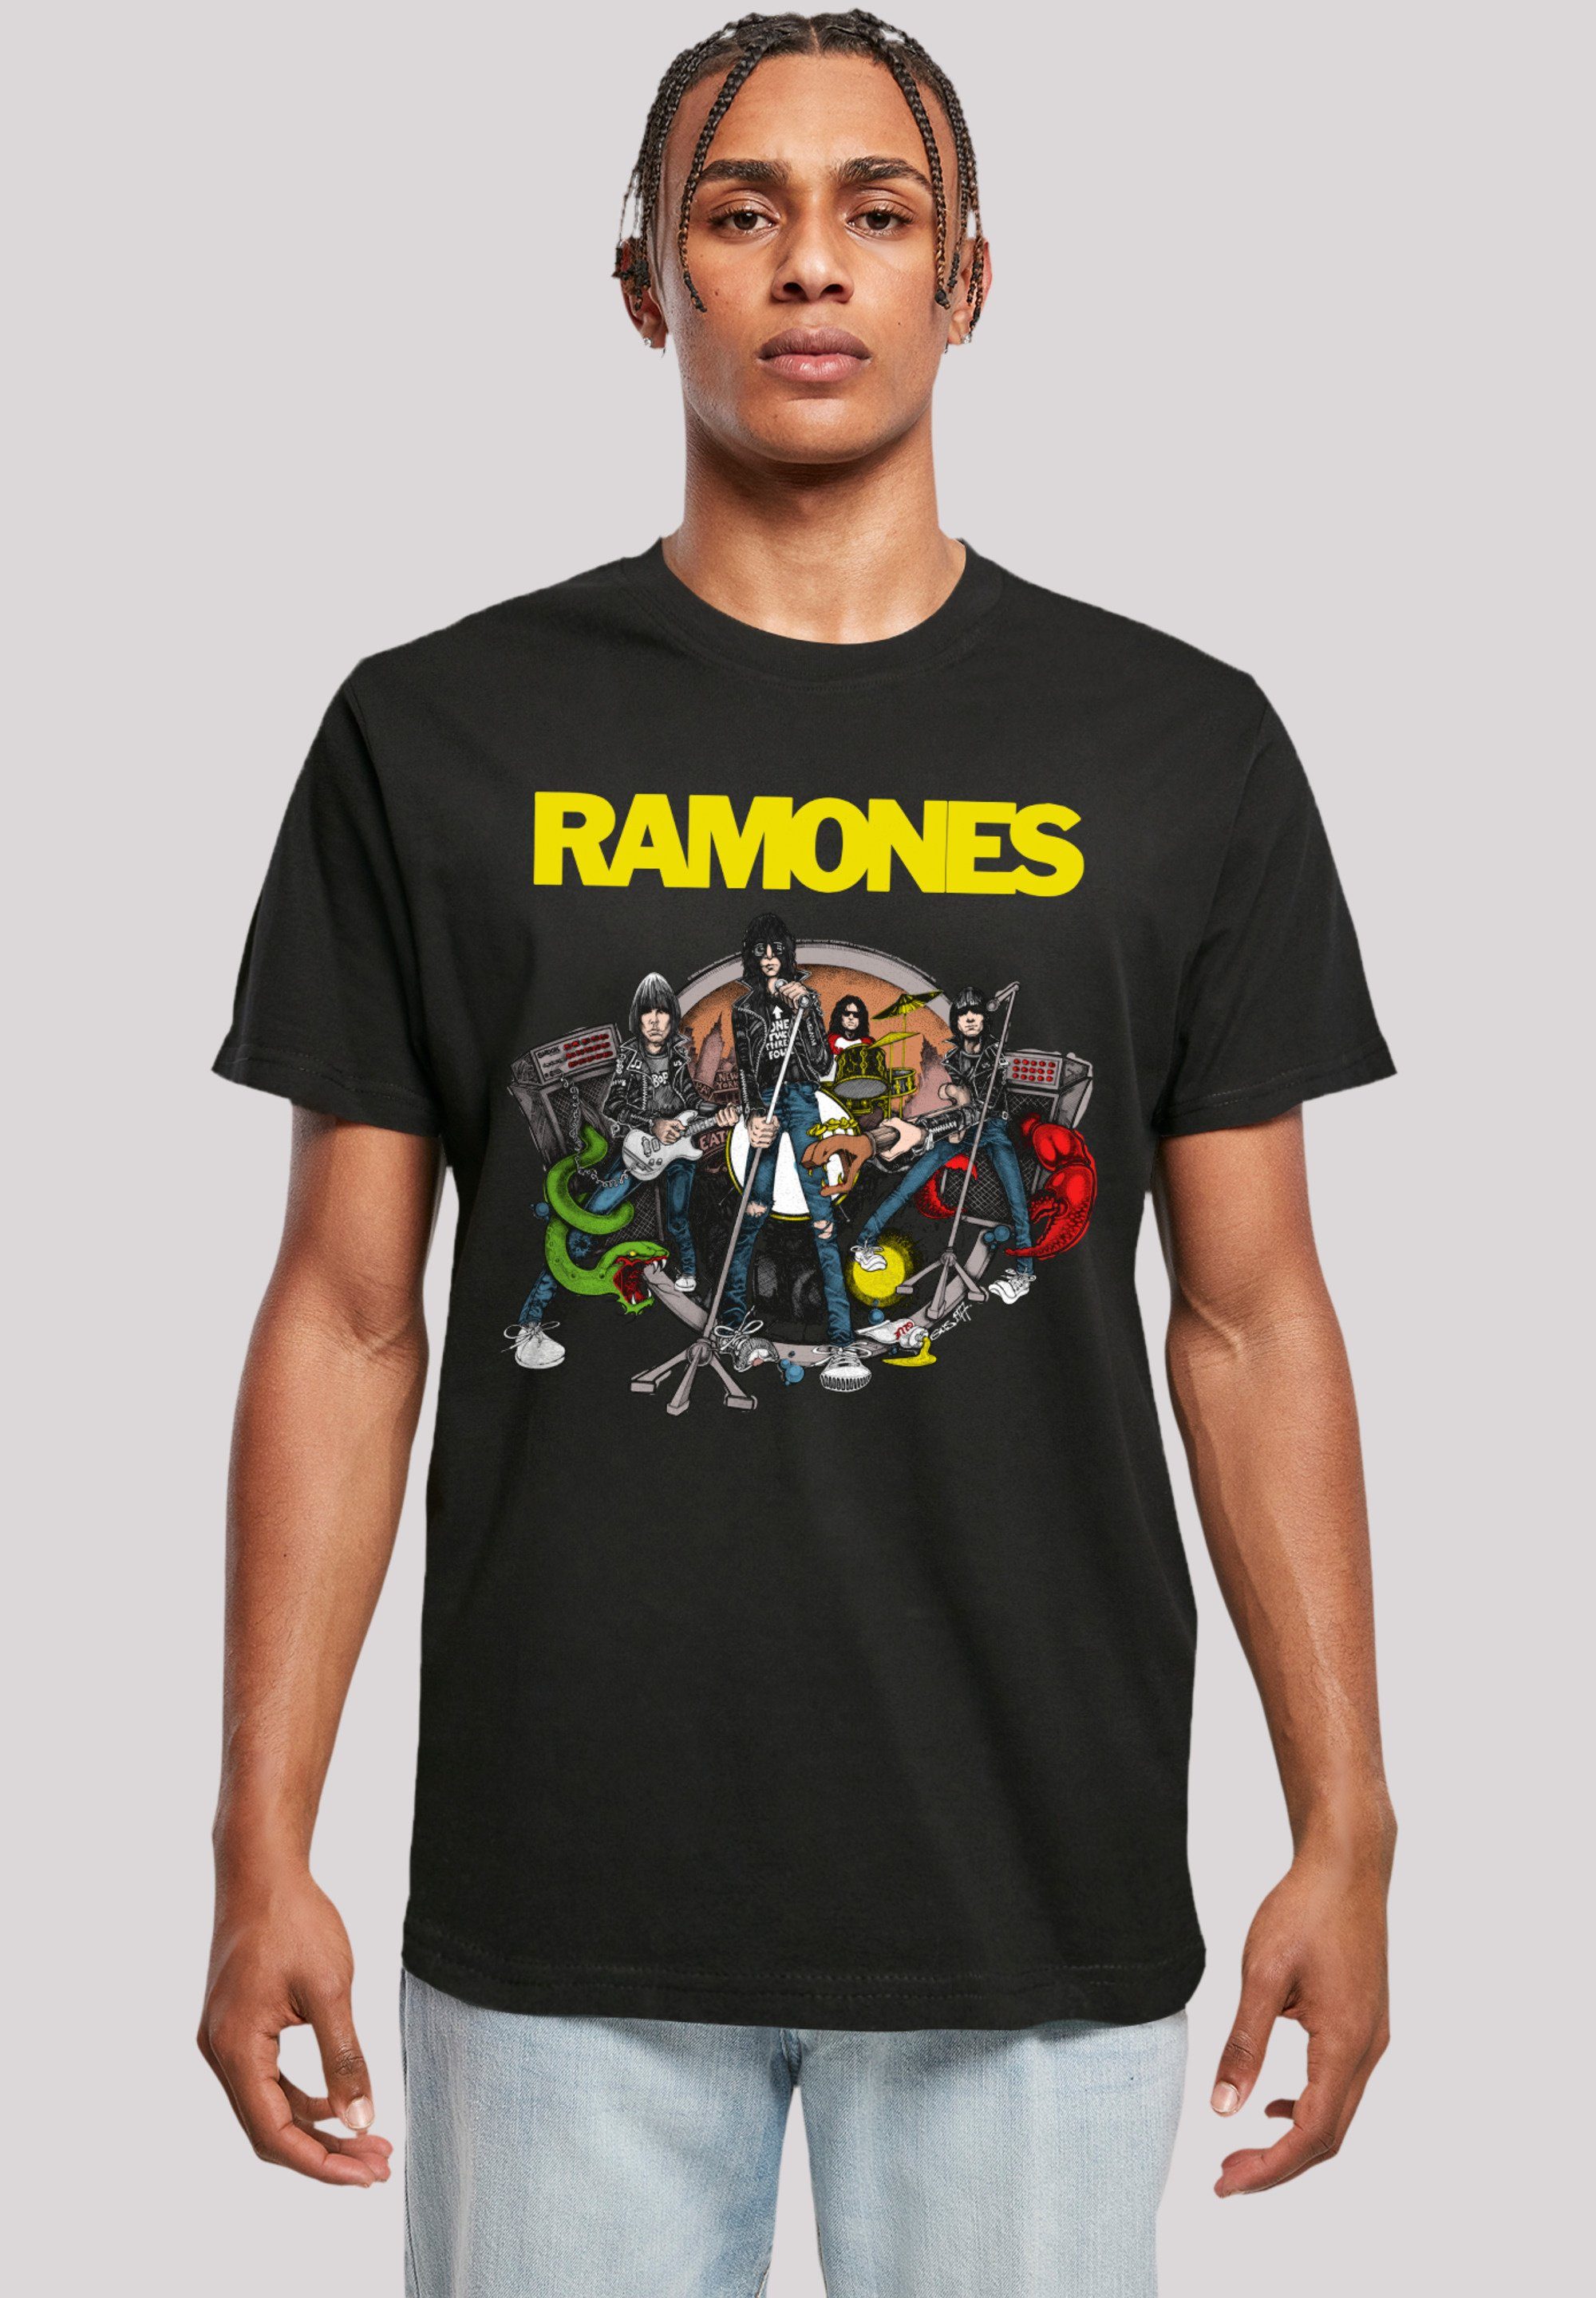 Premium Ruin To Tragekomfort Band Road Band, Rock Musik hohem T-Shirt mit Rock-Musik, F4NT4STIC Sehr Qualität, Ramones weicher Baumwollstoff